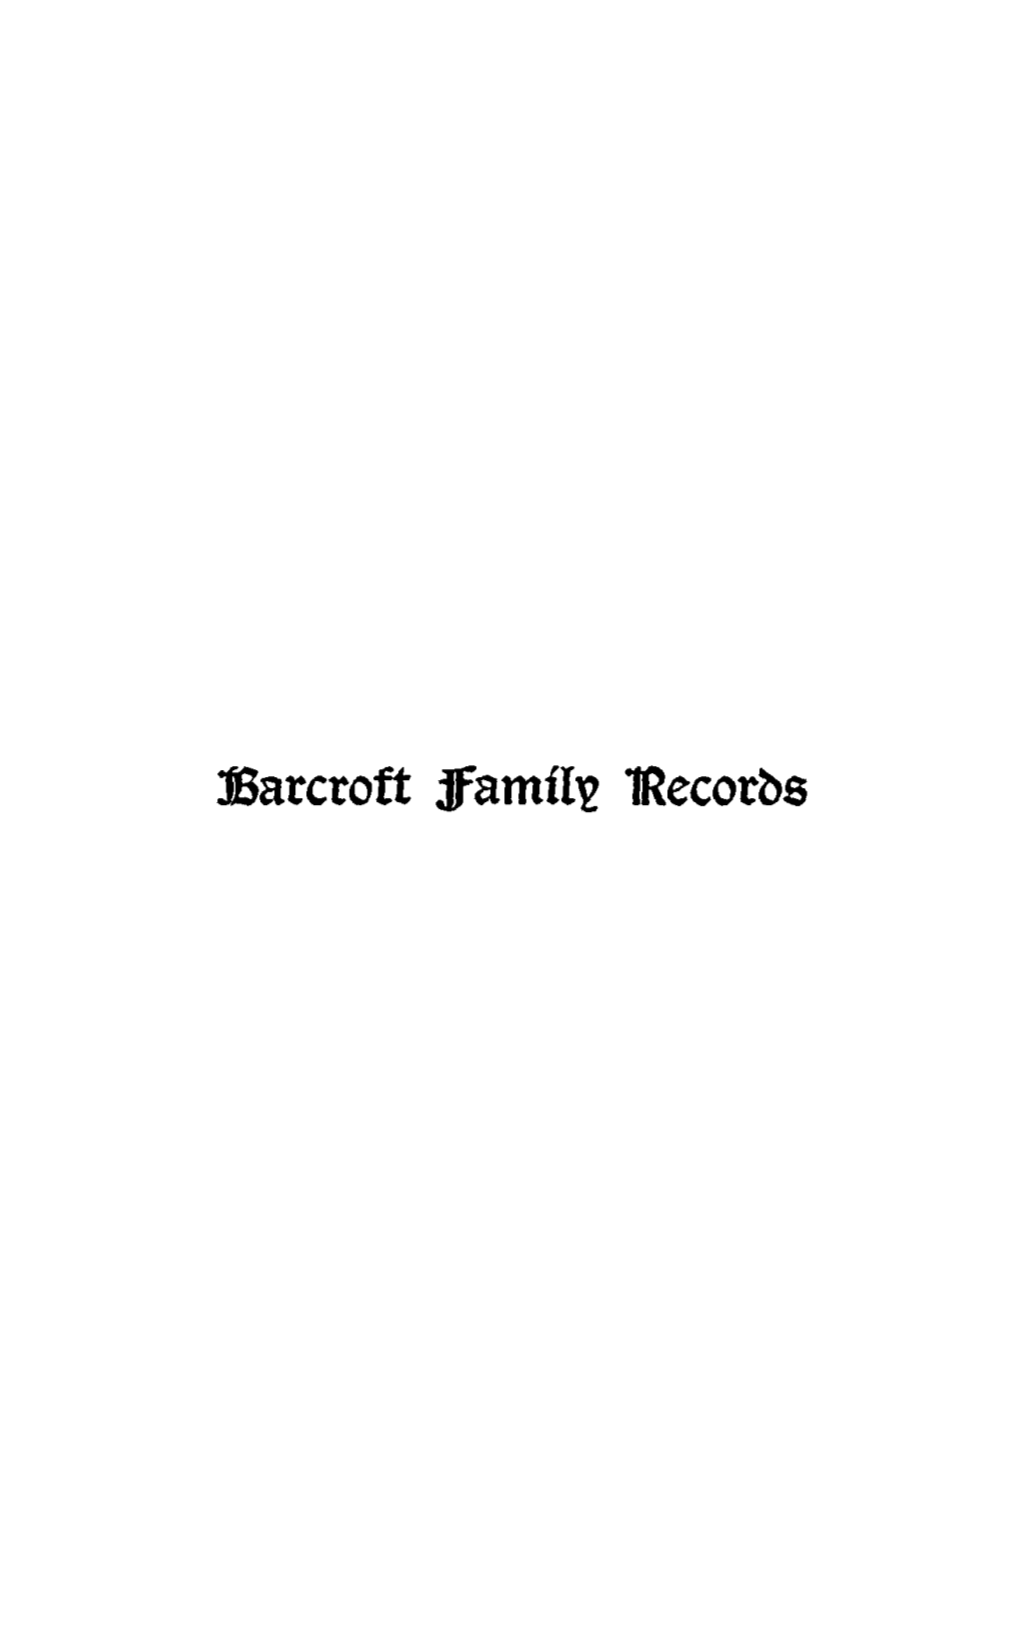 Lsarcroft Jfamfl~ 1Recorbs